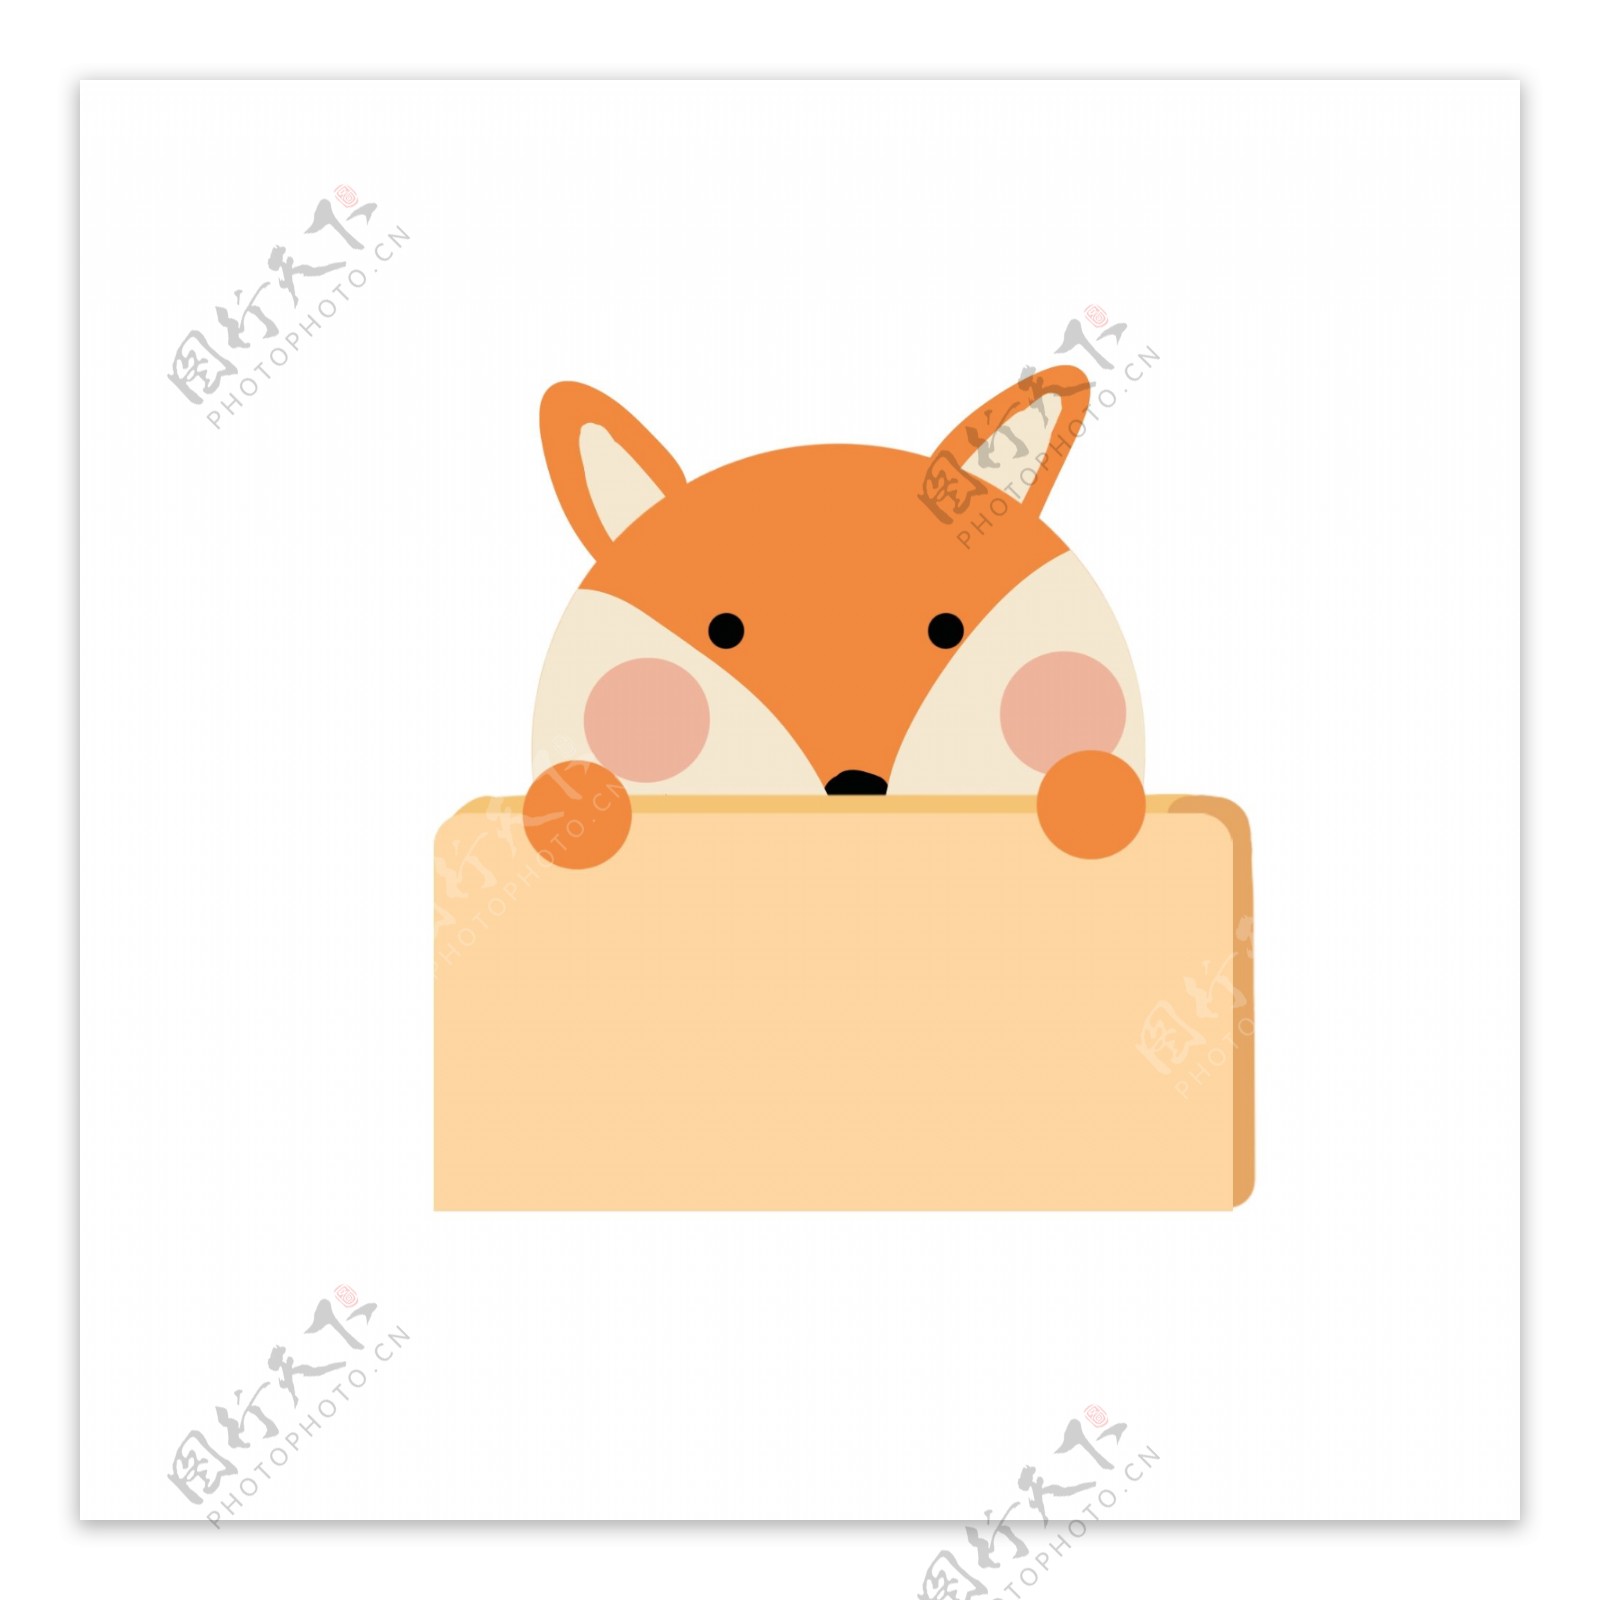 对话框边框气泡框卡通动物狐狸矢量商用元素